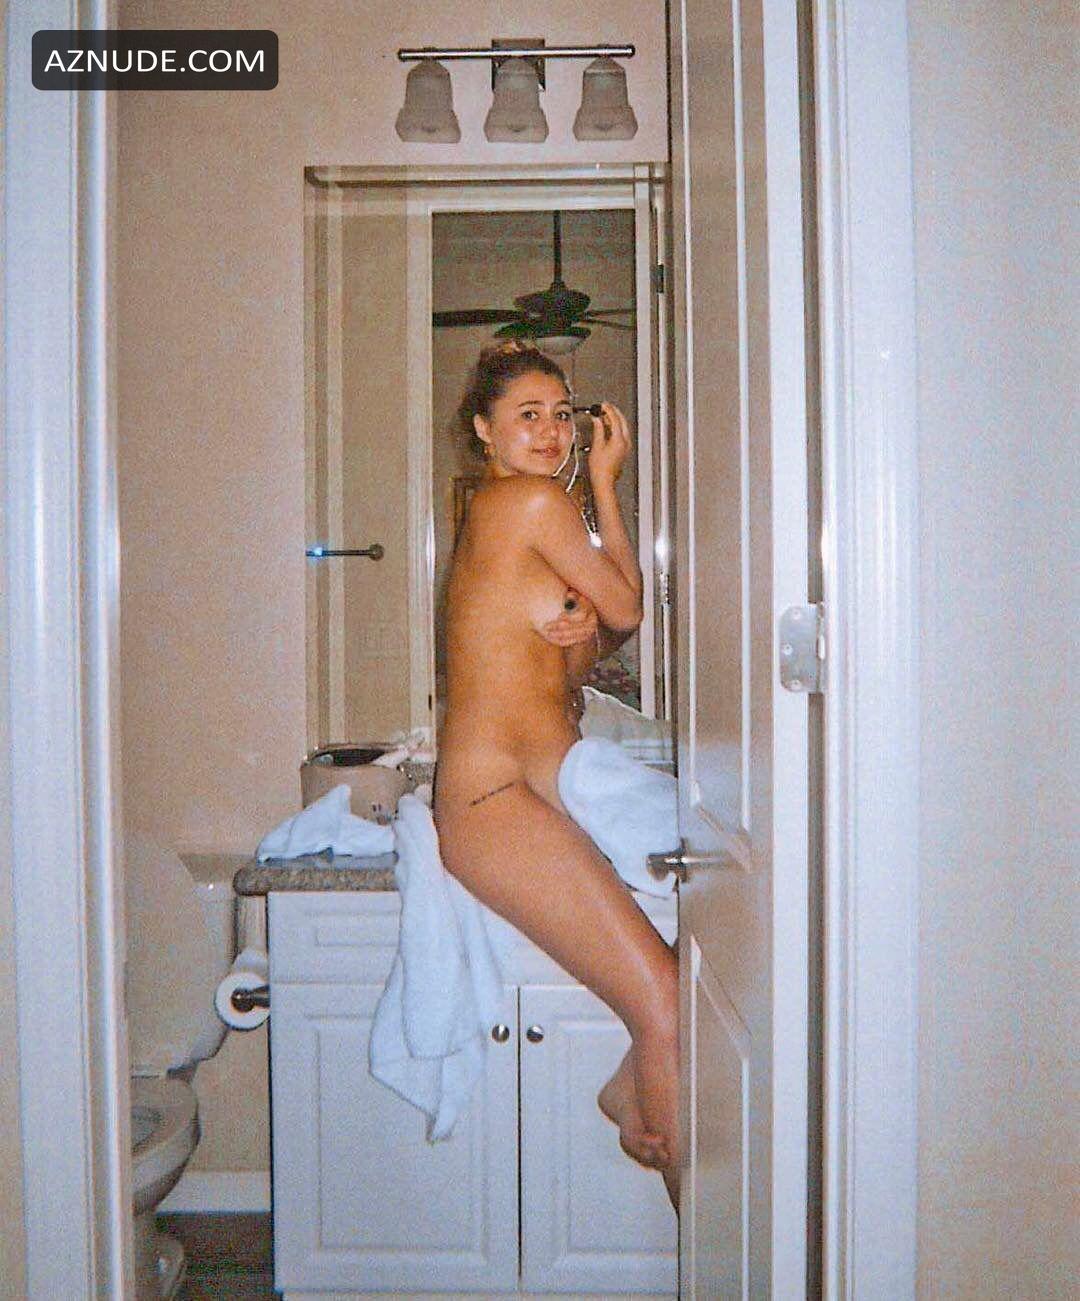 Lia Marie Johnson Nude Covered Photo - AZNude